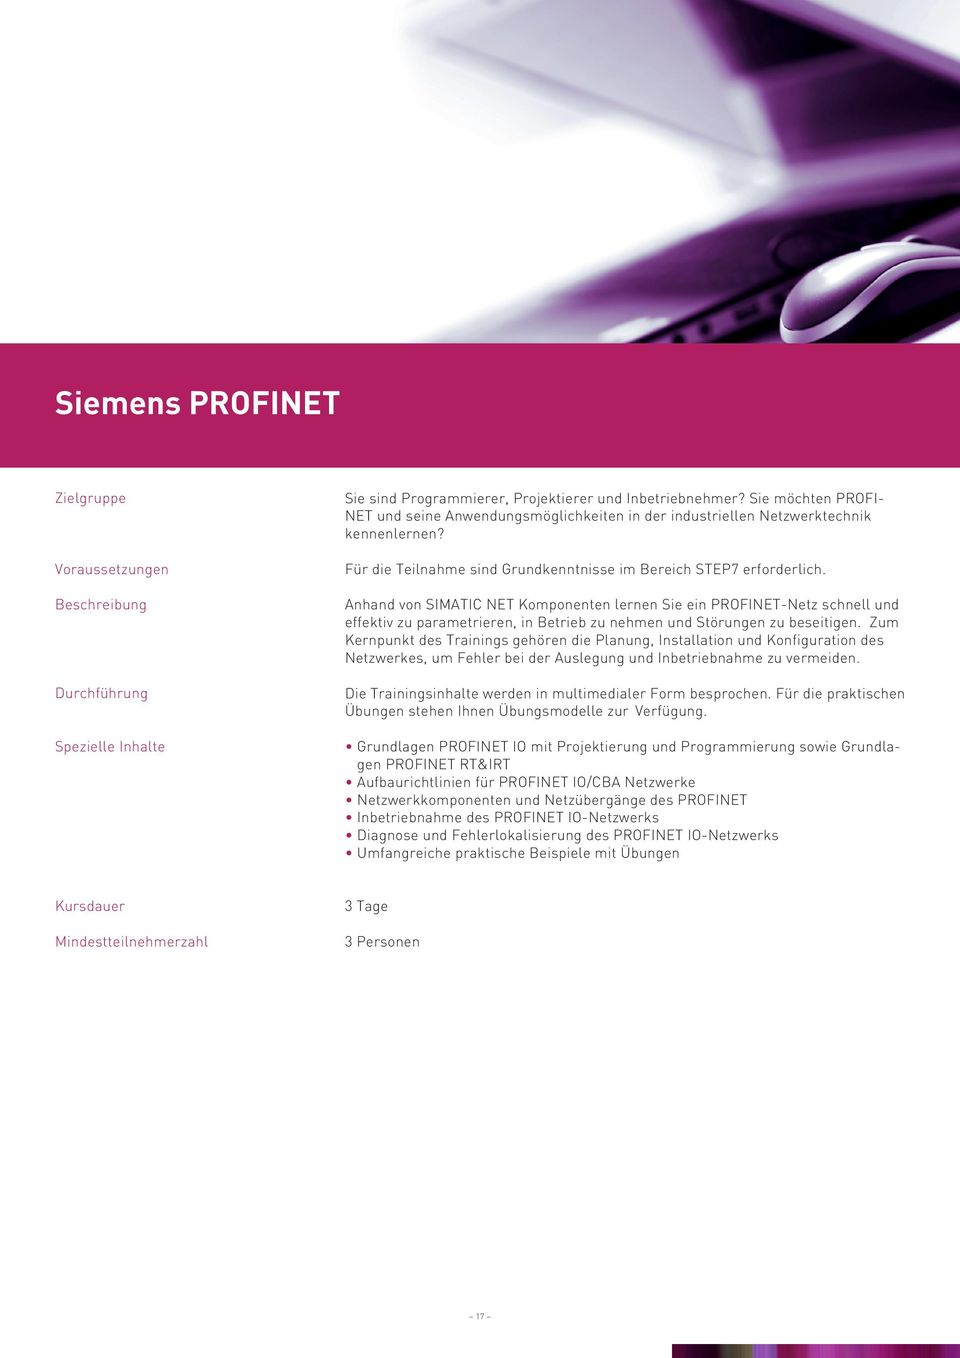 Anhand von SIMATIC NET Komponenten lernen Sie ein PROFINET-Netz schnell und effektiv zu parametrieren, in Betrieb zu nehmen und Störungen zu beseitigen.